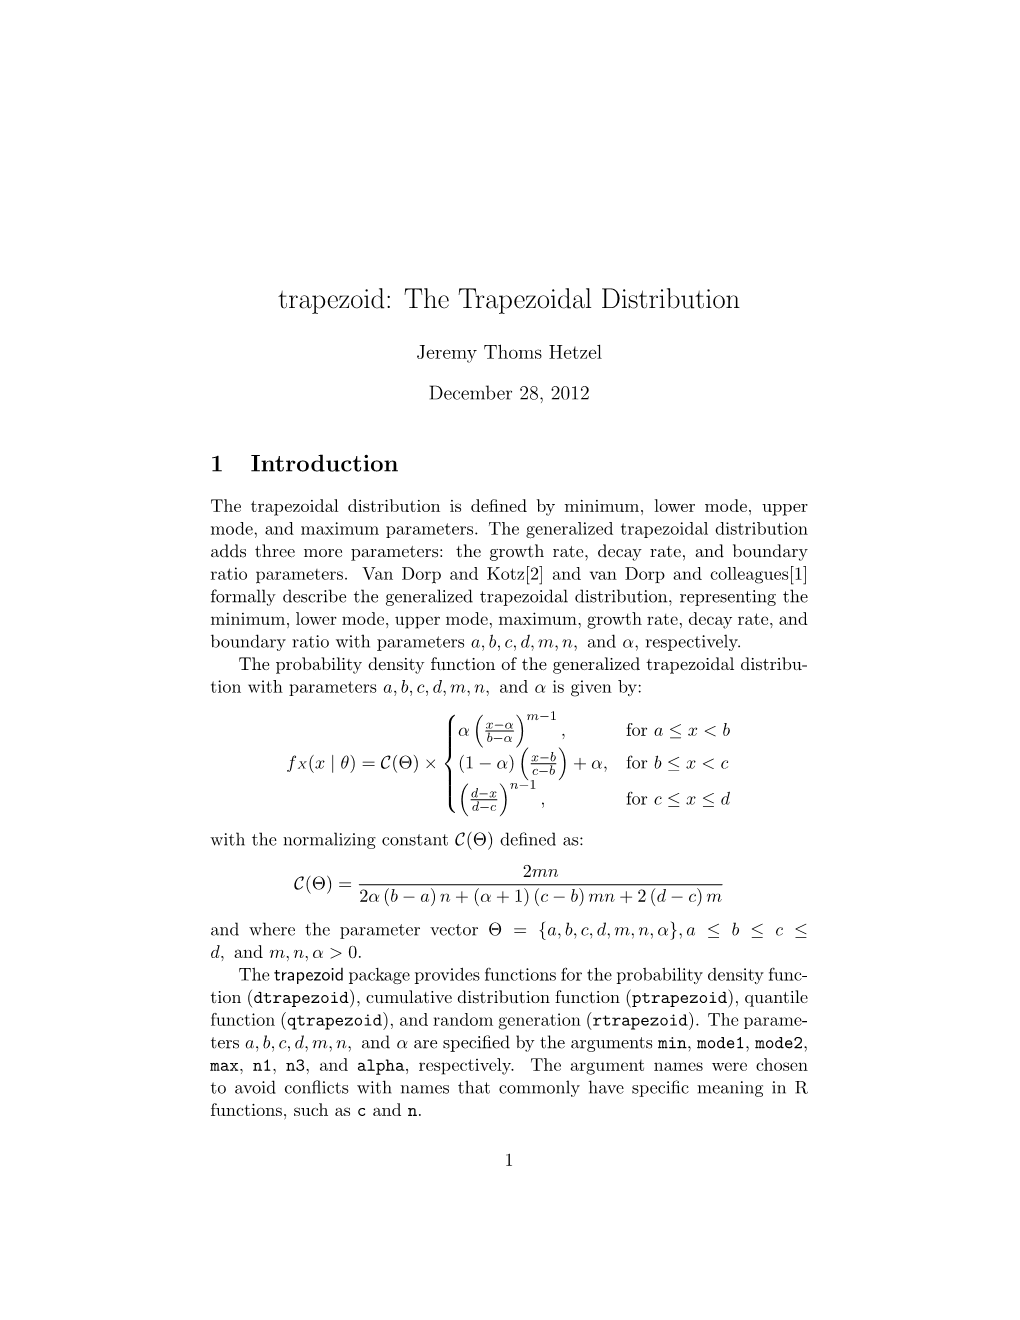 Trapezoid: the Trapezoidal Distribution